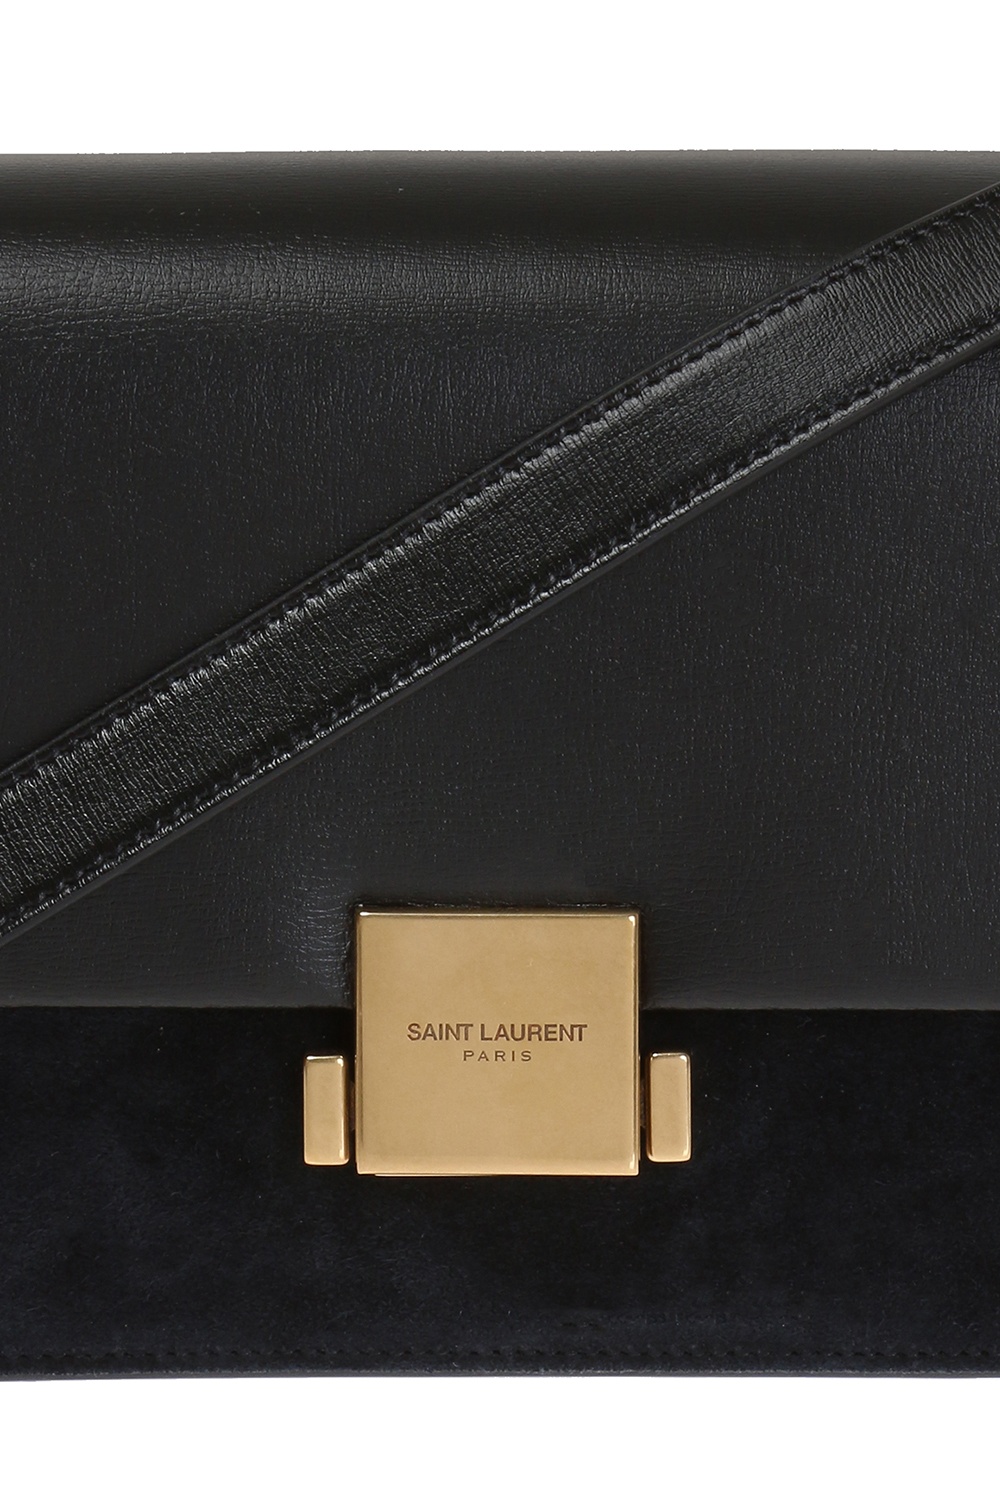 Louis Vuitton - Lace-up shoes - Size: Shoes / EU 41, UK 6,5 - Catawiki